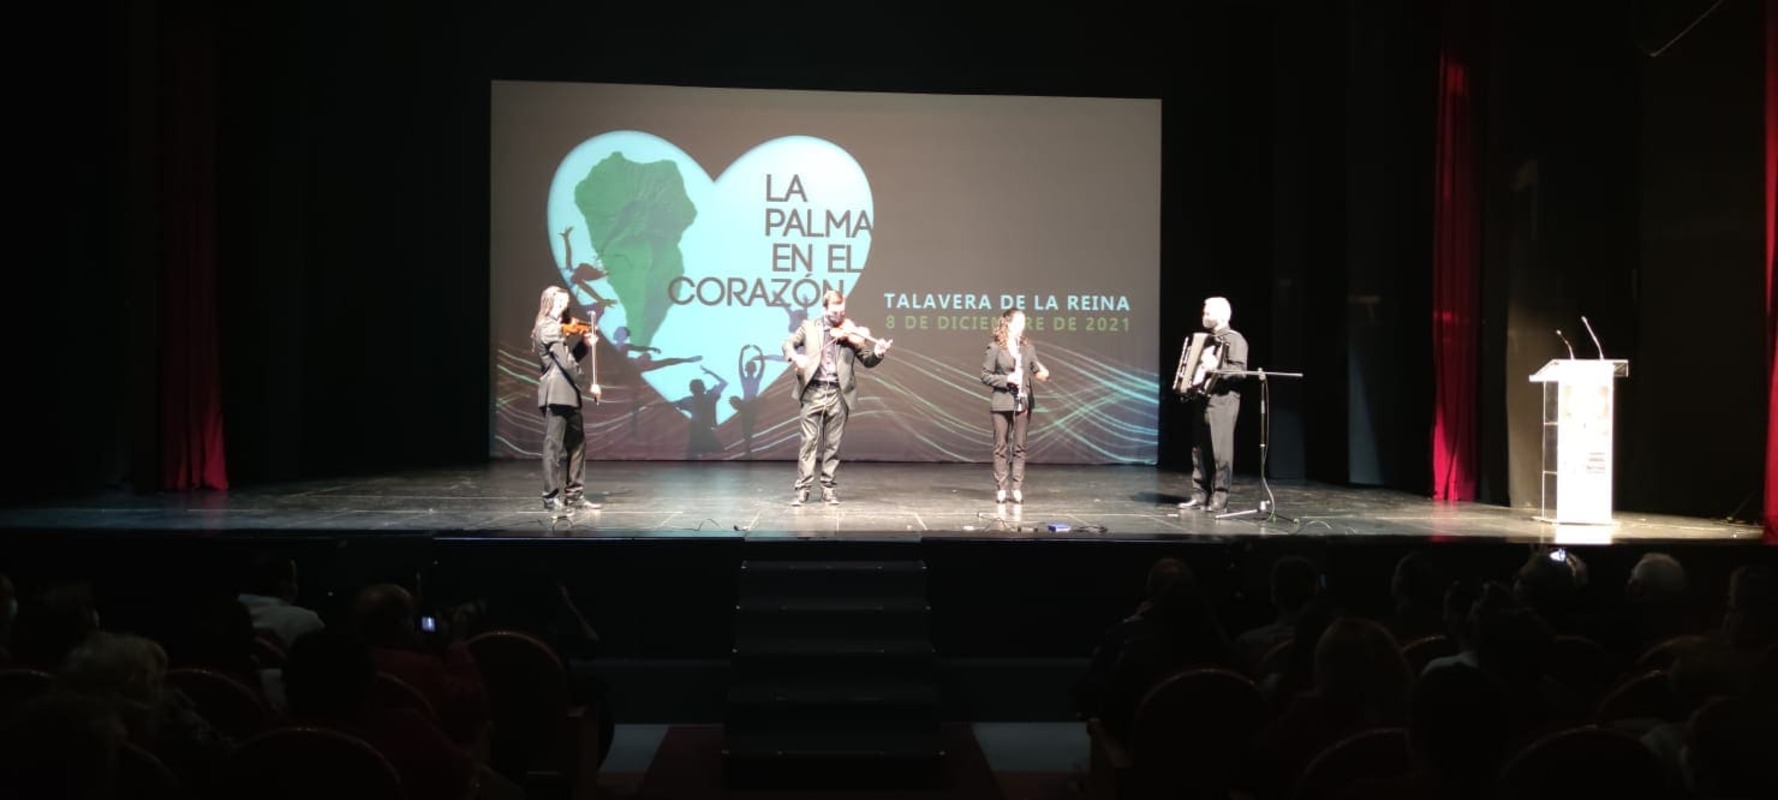 Gala solidaria "La Palma en el corazón"